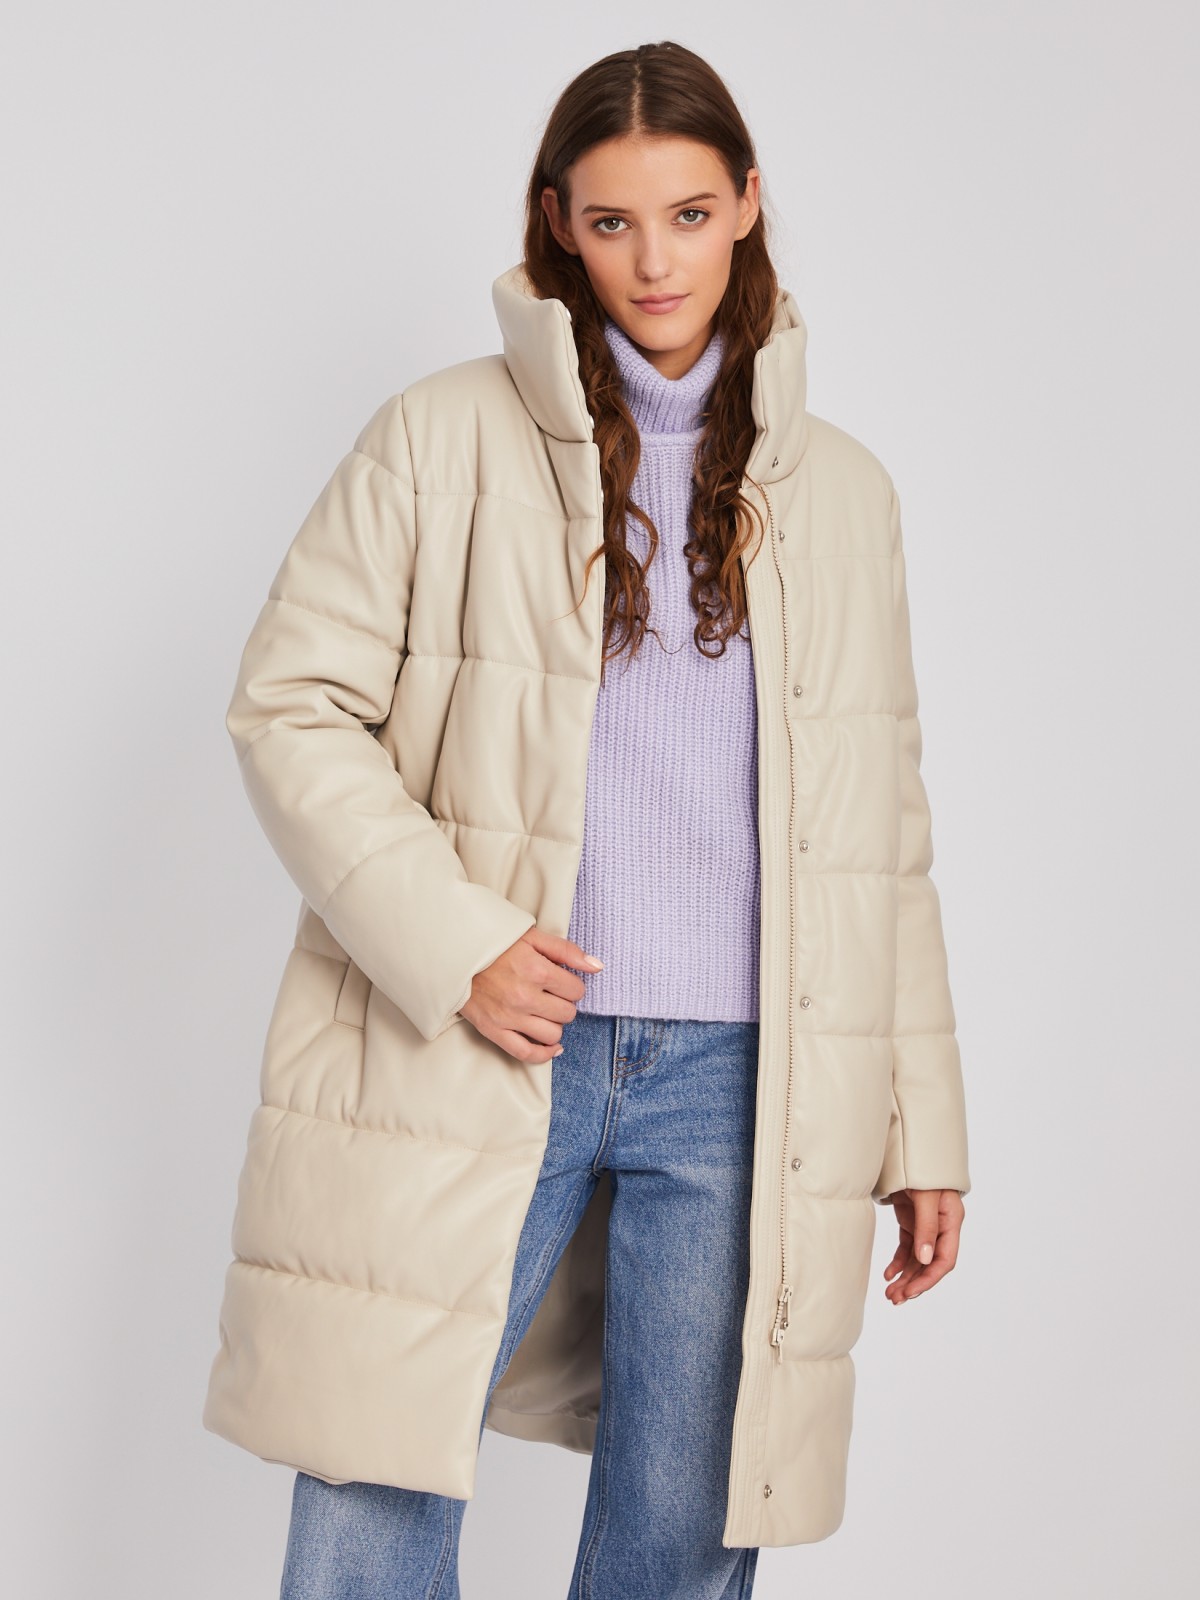 Тёплая стёганая куртка-пальто из экокожи с высоким воротником zolla 023345202054, цвет бежевый, размер XS